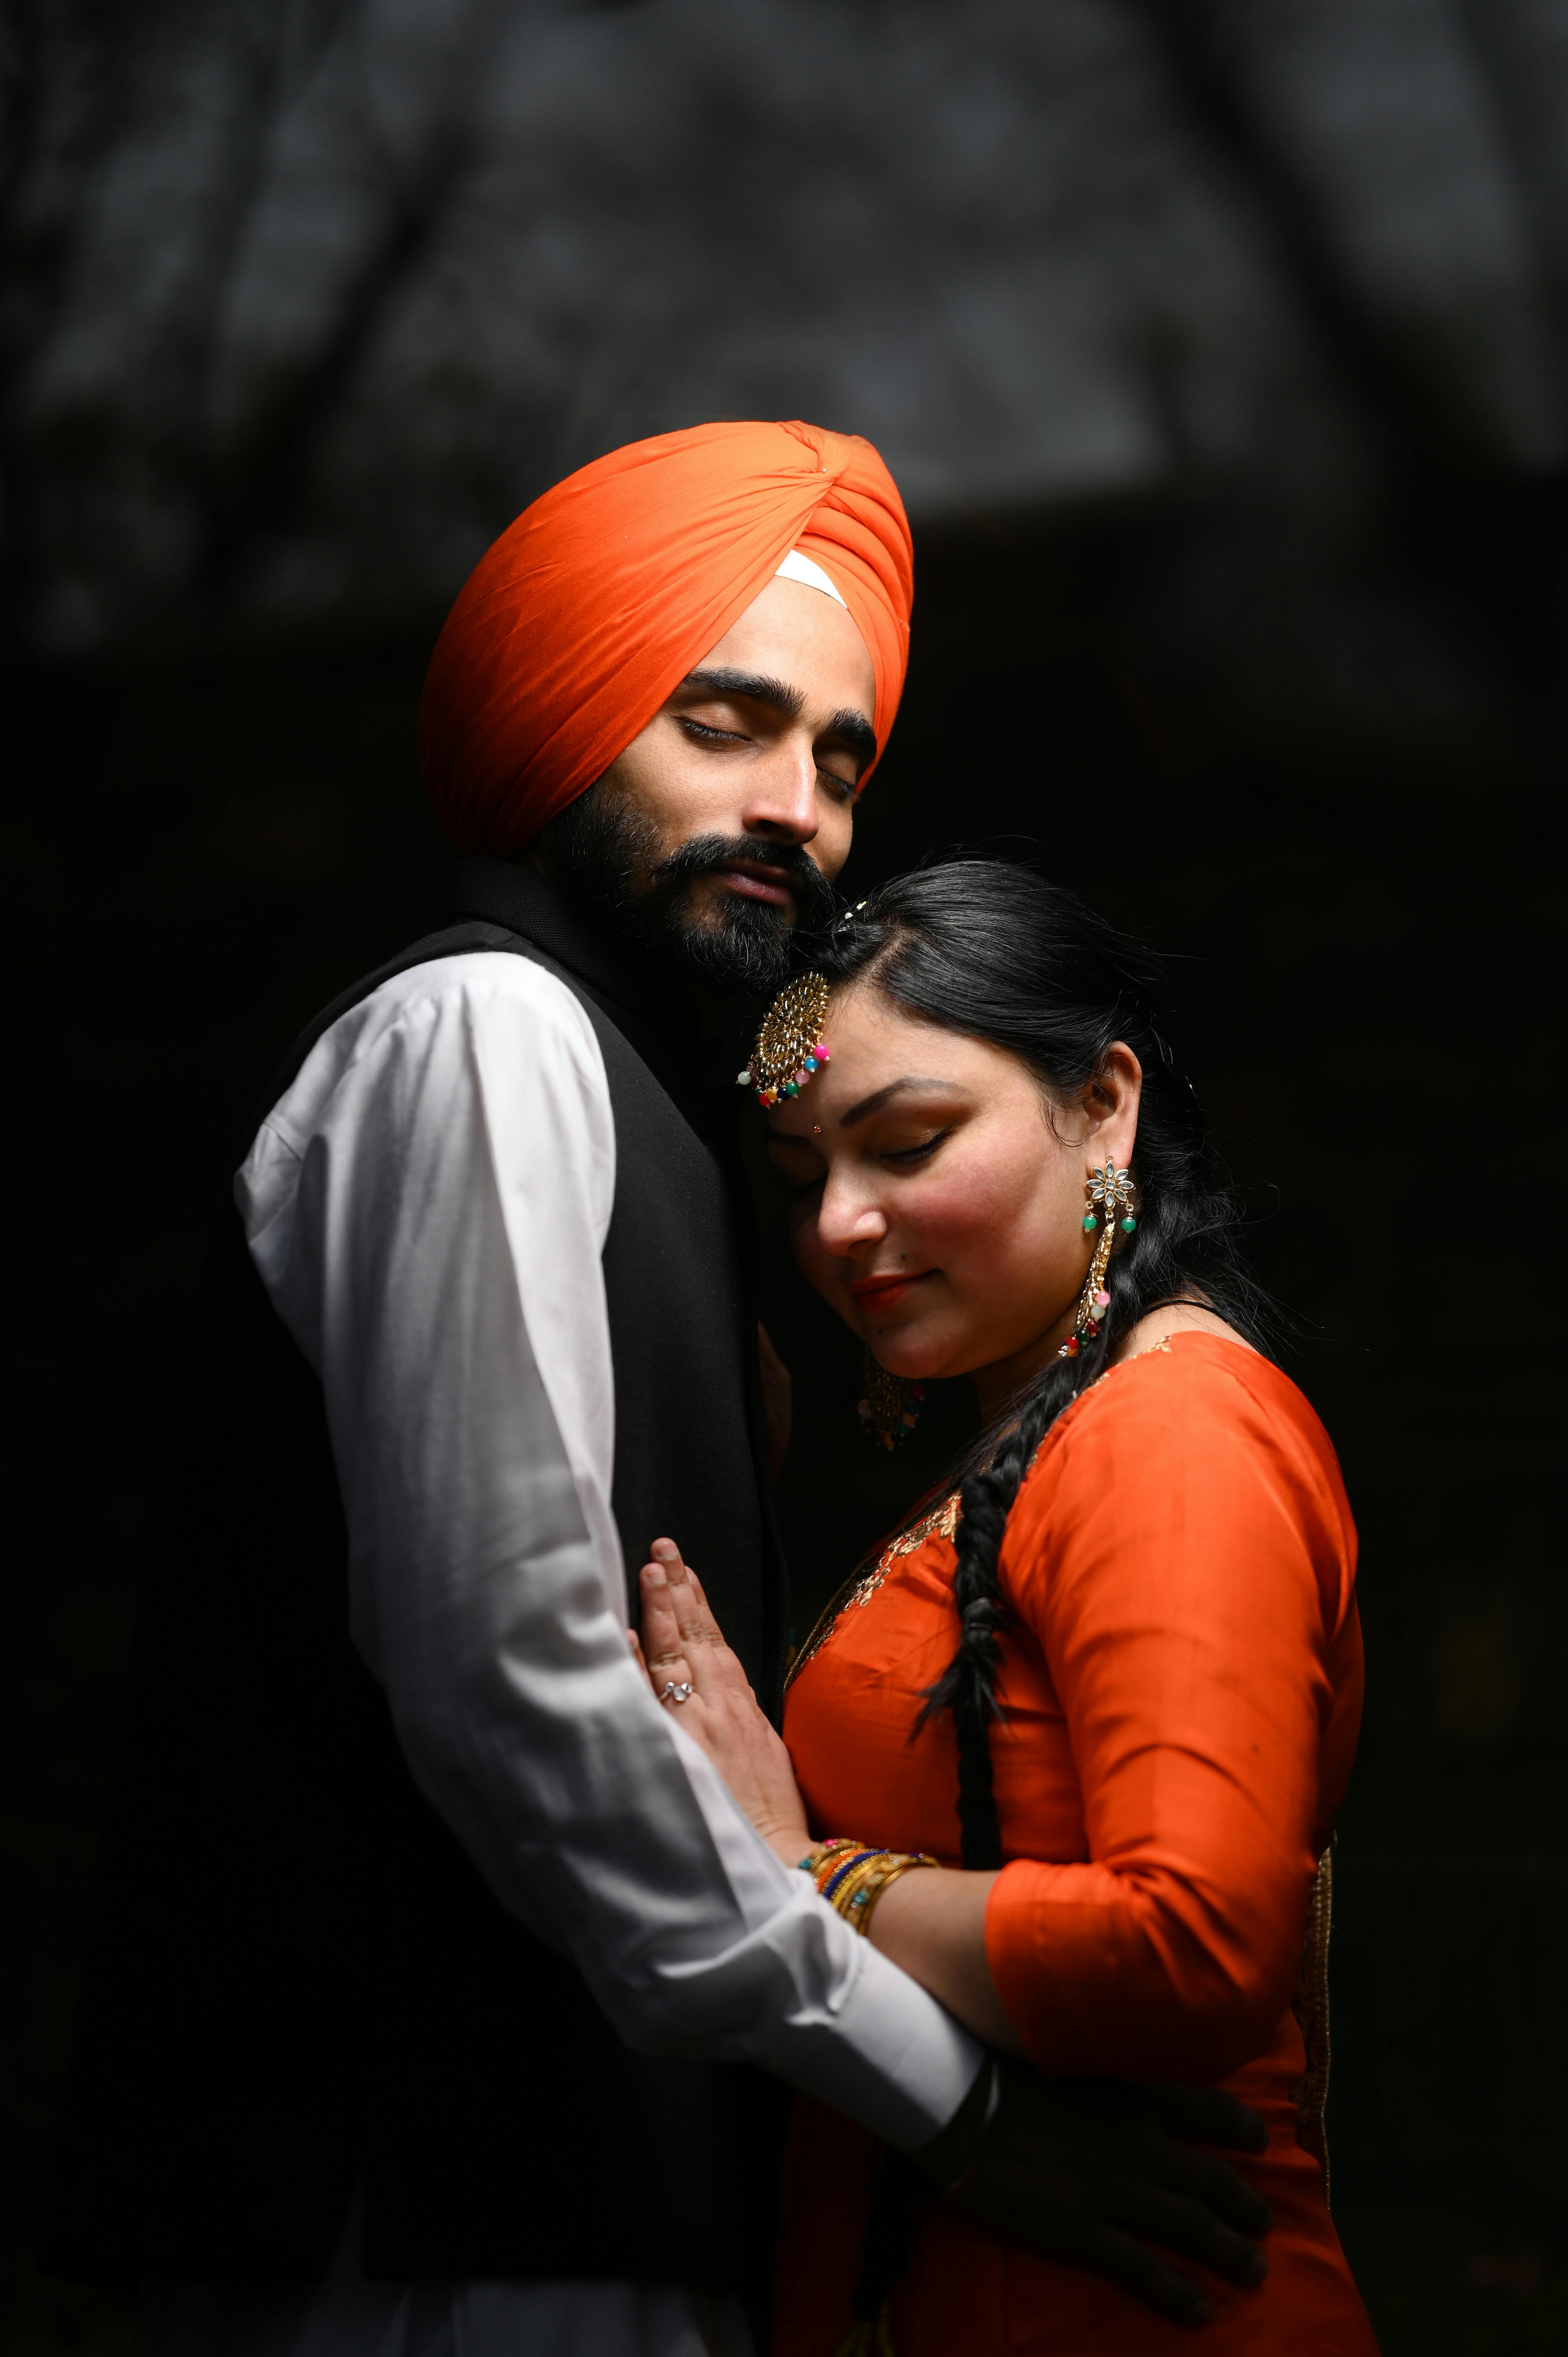 Punjabi Wedding Photos, Download The BEST Free Punjabi Wedding Stock Photos  & HD Images